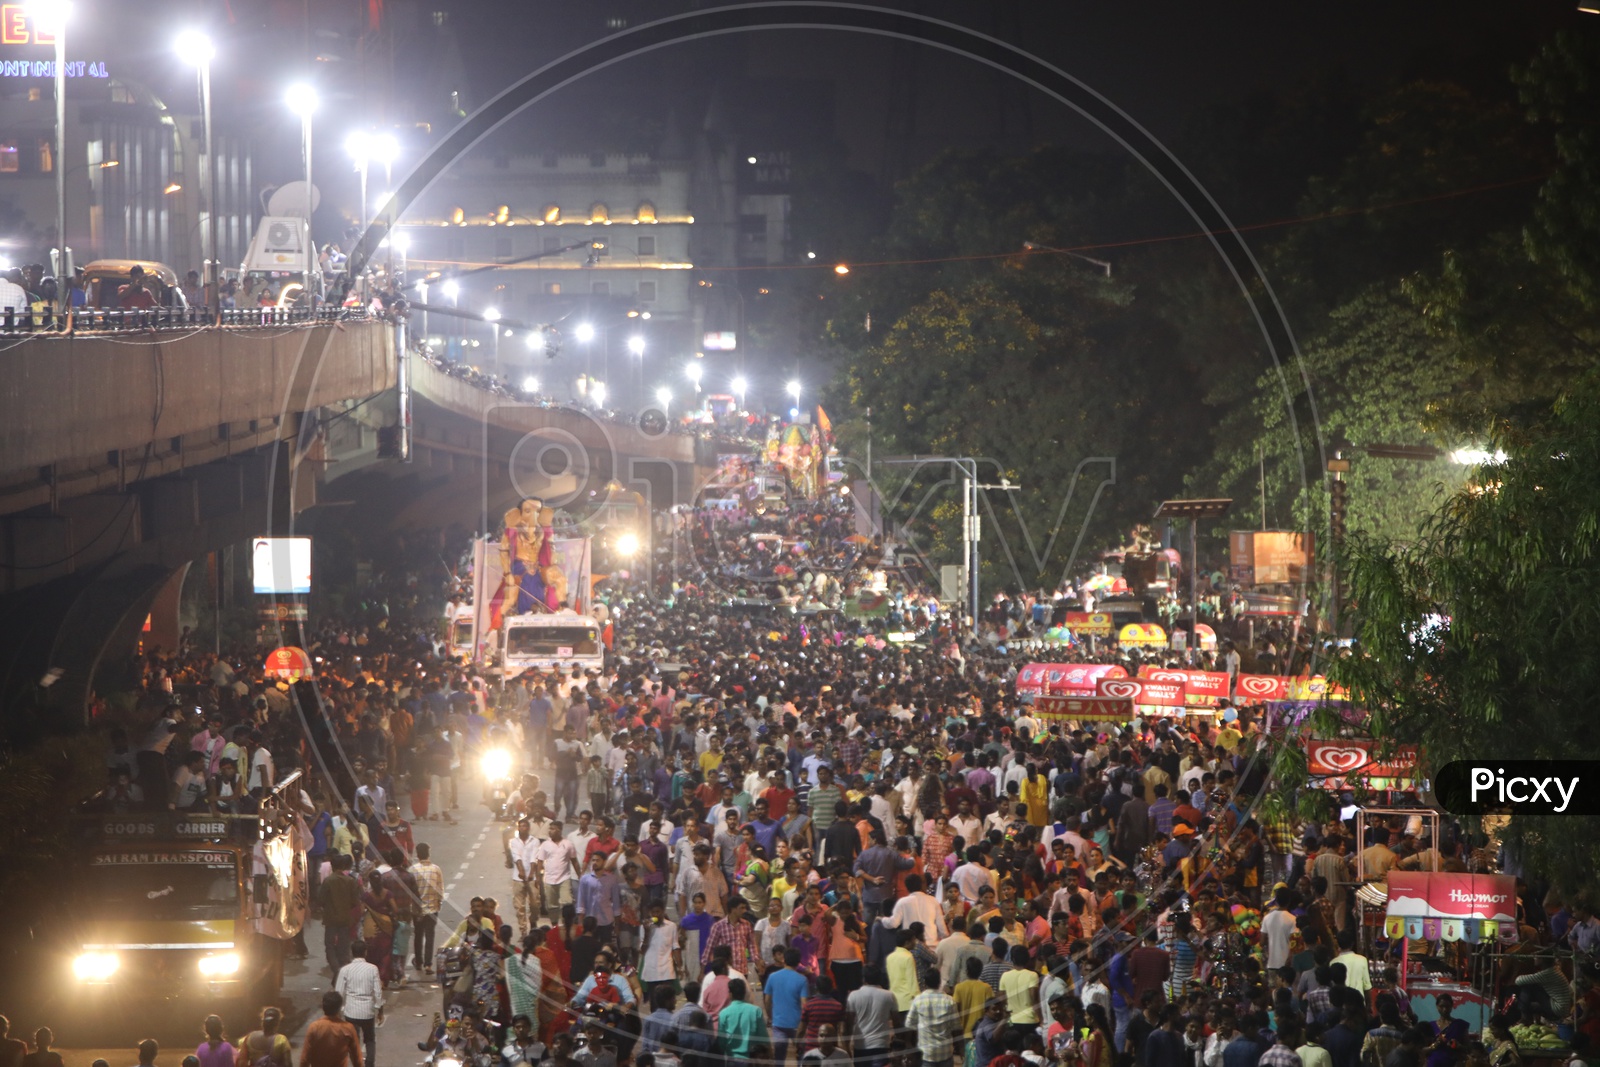 Ganesh Idols At Tankbund During The Ganesh Nimarjanam / Visarjan in Hyderabad